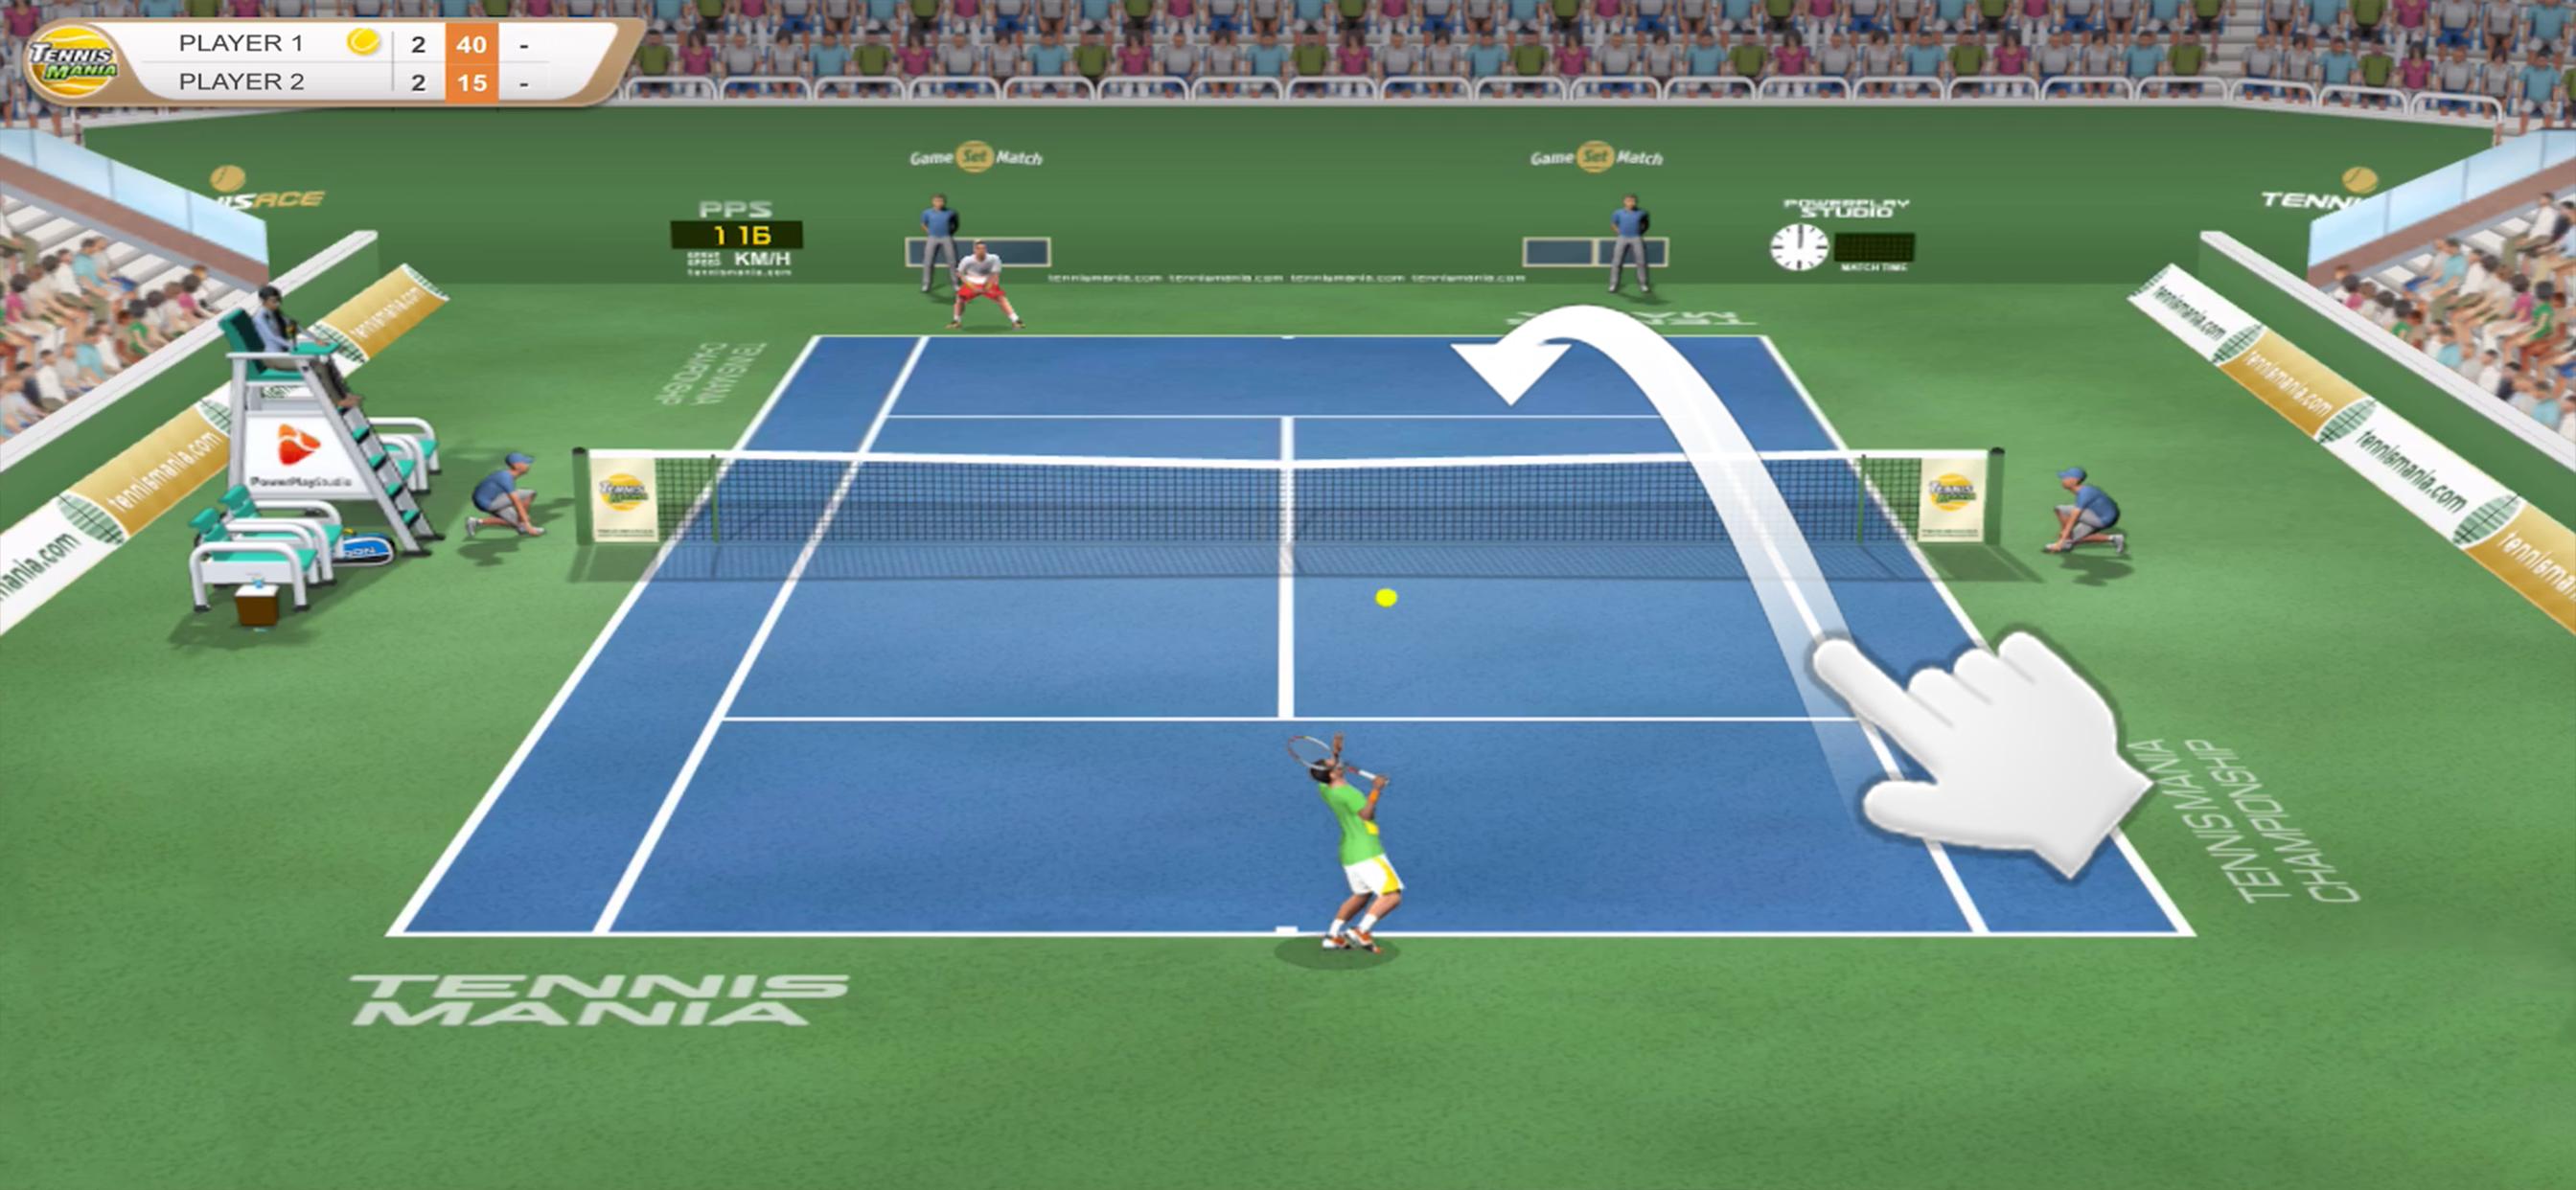 Tennis Mania APK cho Android: Thưởng thức những trận đấu quần vợt đầy kịch tính trên điện thoại của bạn với Tennis Mania APK cho Android. Với đồ họa chân thực và các tính năng mới, bạn sẽ có cơ hội trở thành tay vợt hàng đầu trong trò chơi này.